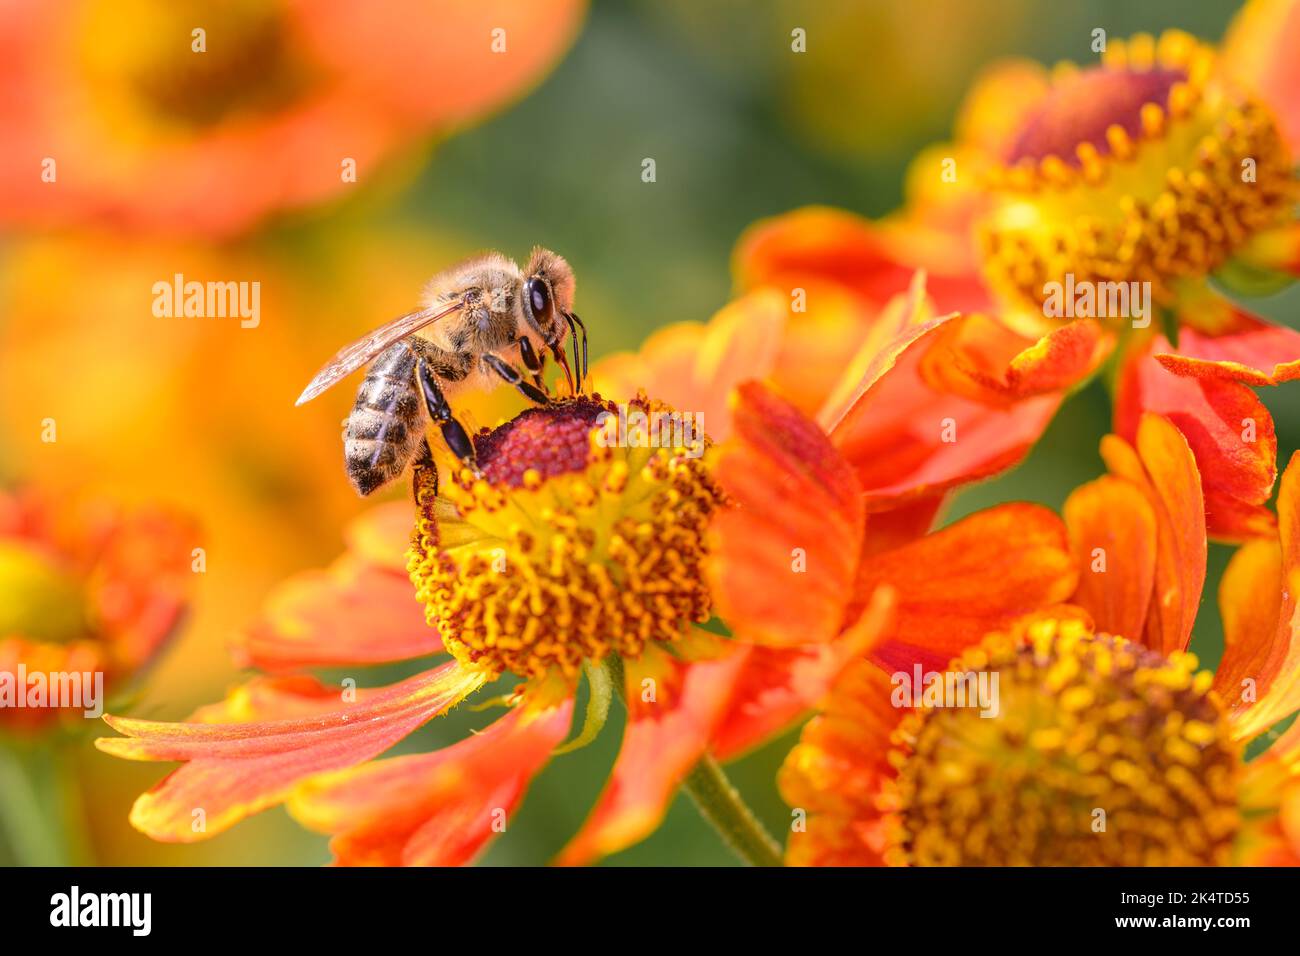 Biene - APIs Mellifera - Bestäubung Einer Blume der gemeinsamen Sonnenblume - Helenium Autumnale Stockfoto